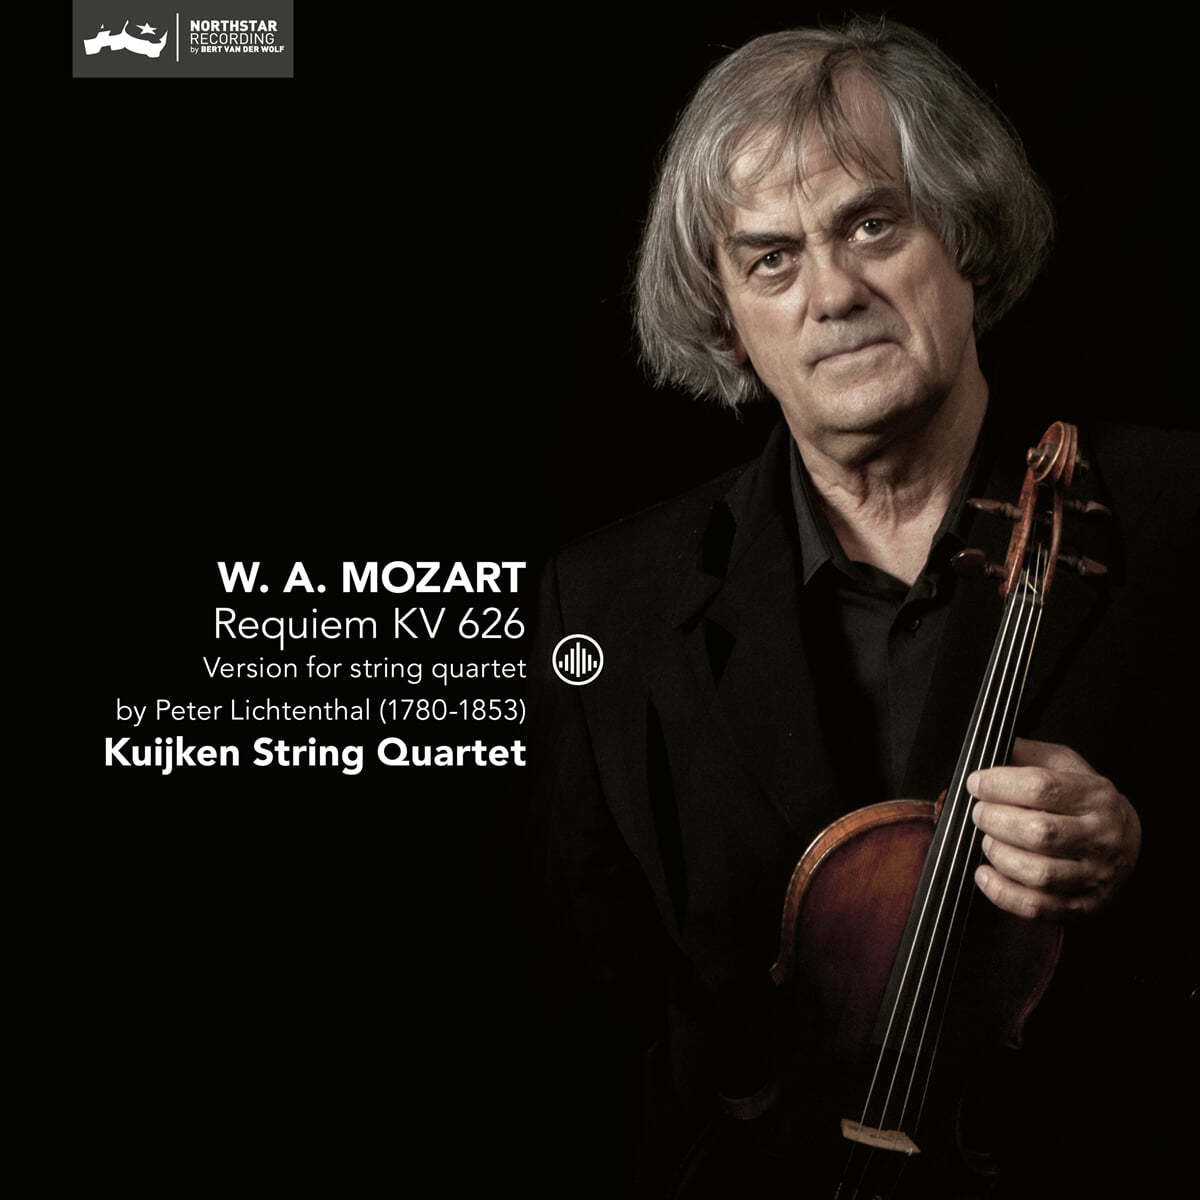 Kuijken String Quartet 모차르트: 레퀴엠 - 현악 사중주 판본 (Mozart: Requiem K.626 - Version For String Quartet By Peter Lichtenthal) 